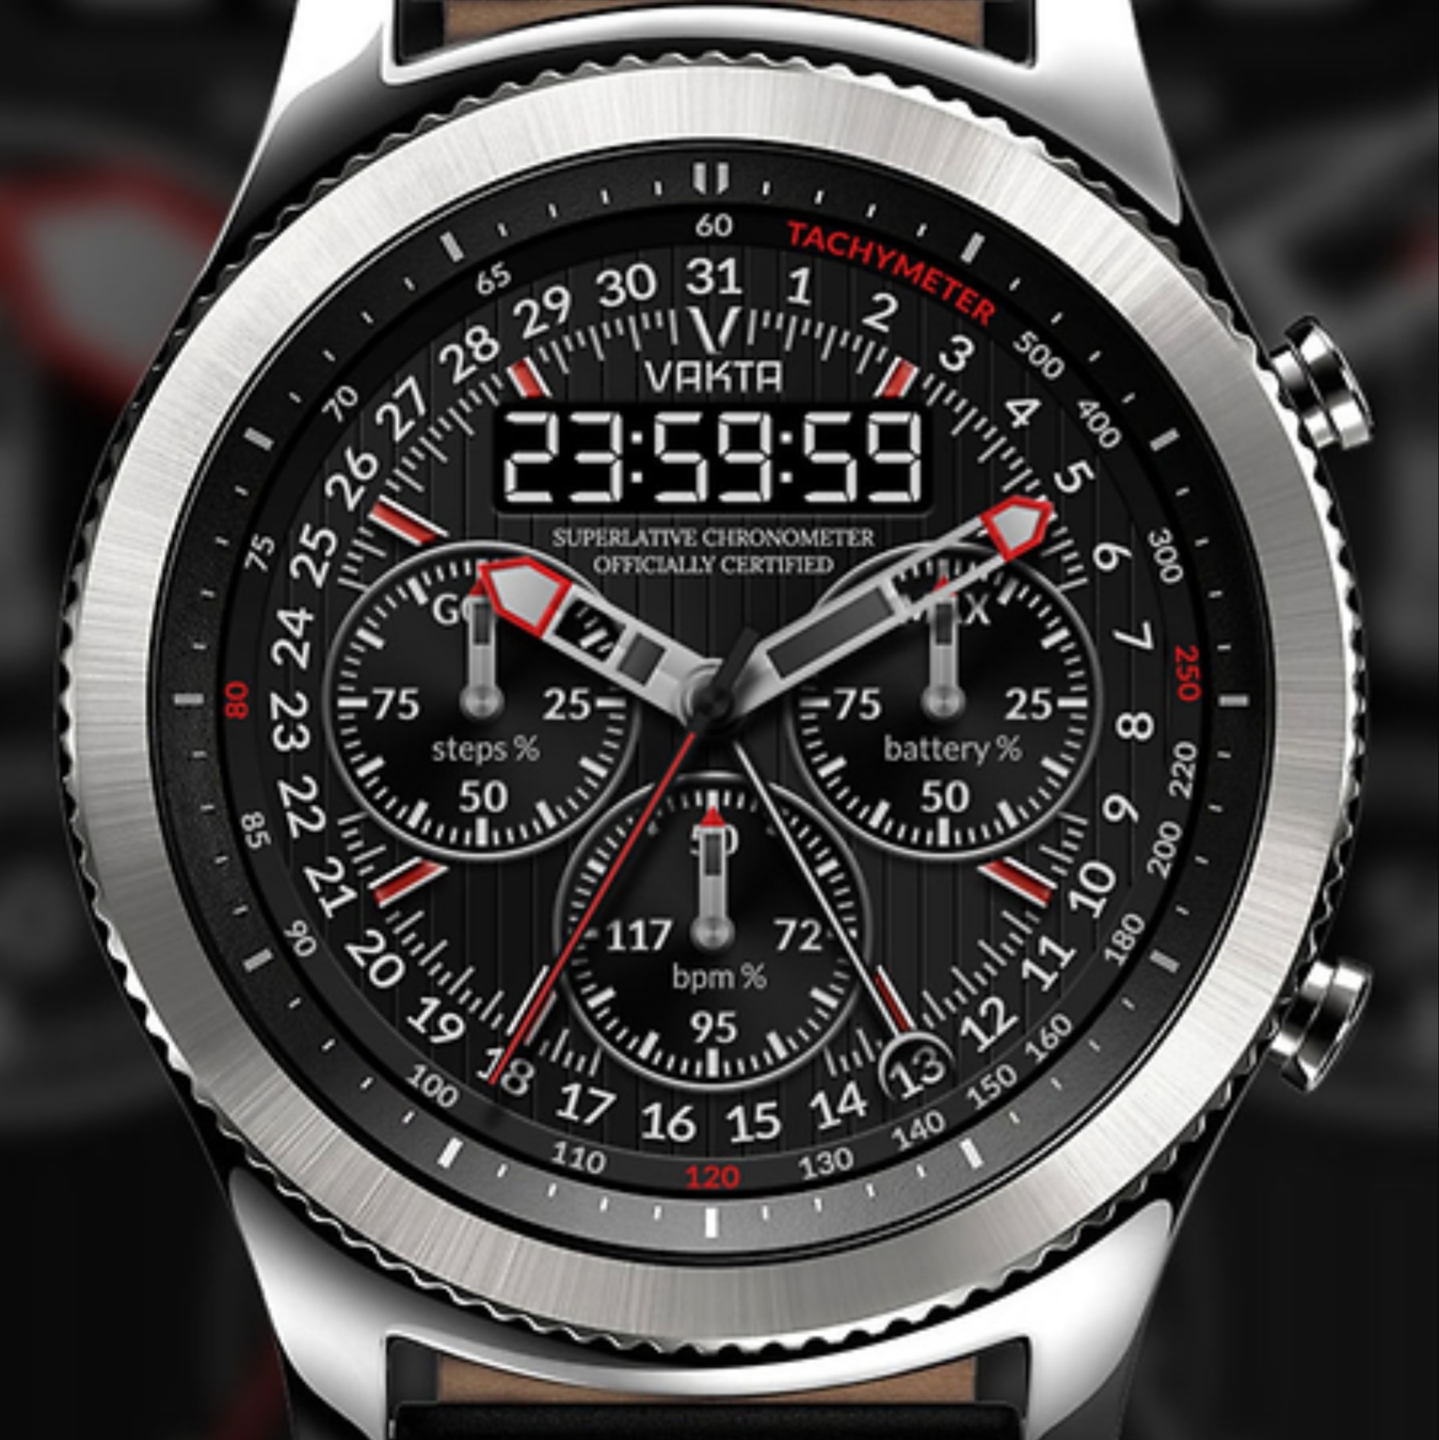 World 3 watch. Samsung s3 Frontier циферблаты. Watchface Gear s3. Циферблаты для самсунг Gear 3 Frontier. Omnia watchface Samsung.